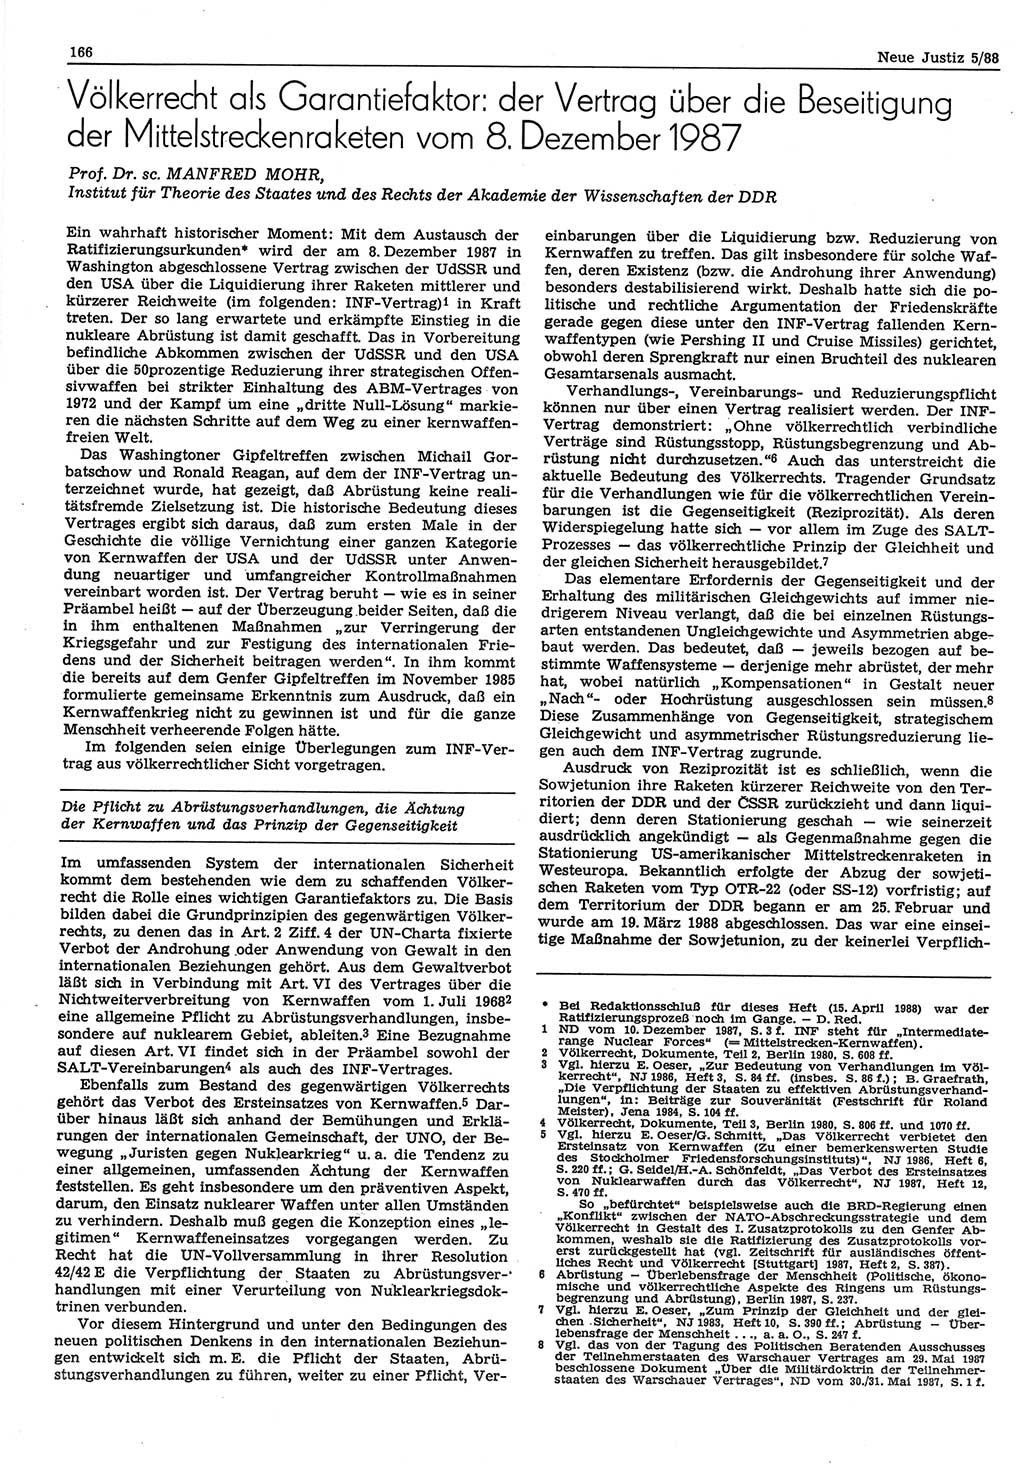 Neue Justiz (NJ), Zeitschrift für sozialistisches Recht und Gesetzlichkeit [Deutsche Demokratische Republik (DDR)], 42. Jahrgang 1988, Seite 166 (NJ DDR 1988, S. 166)